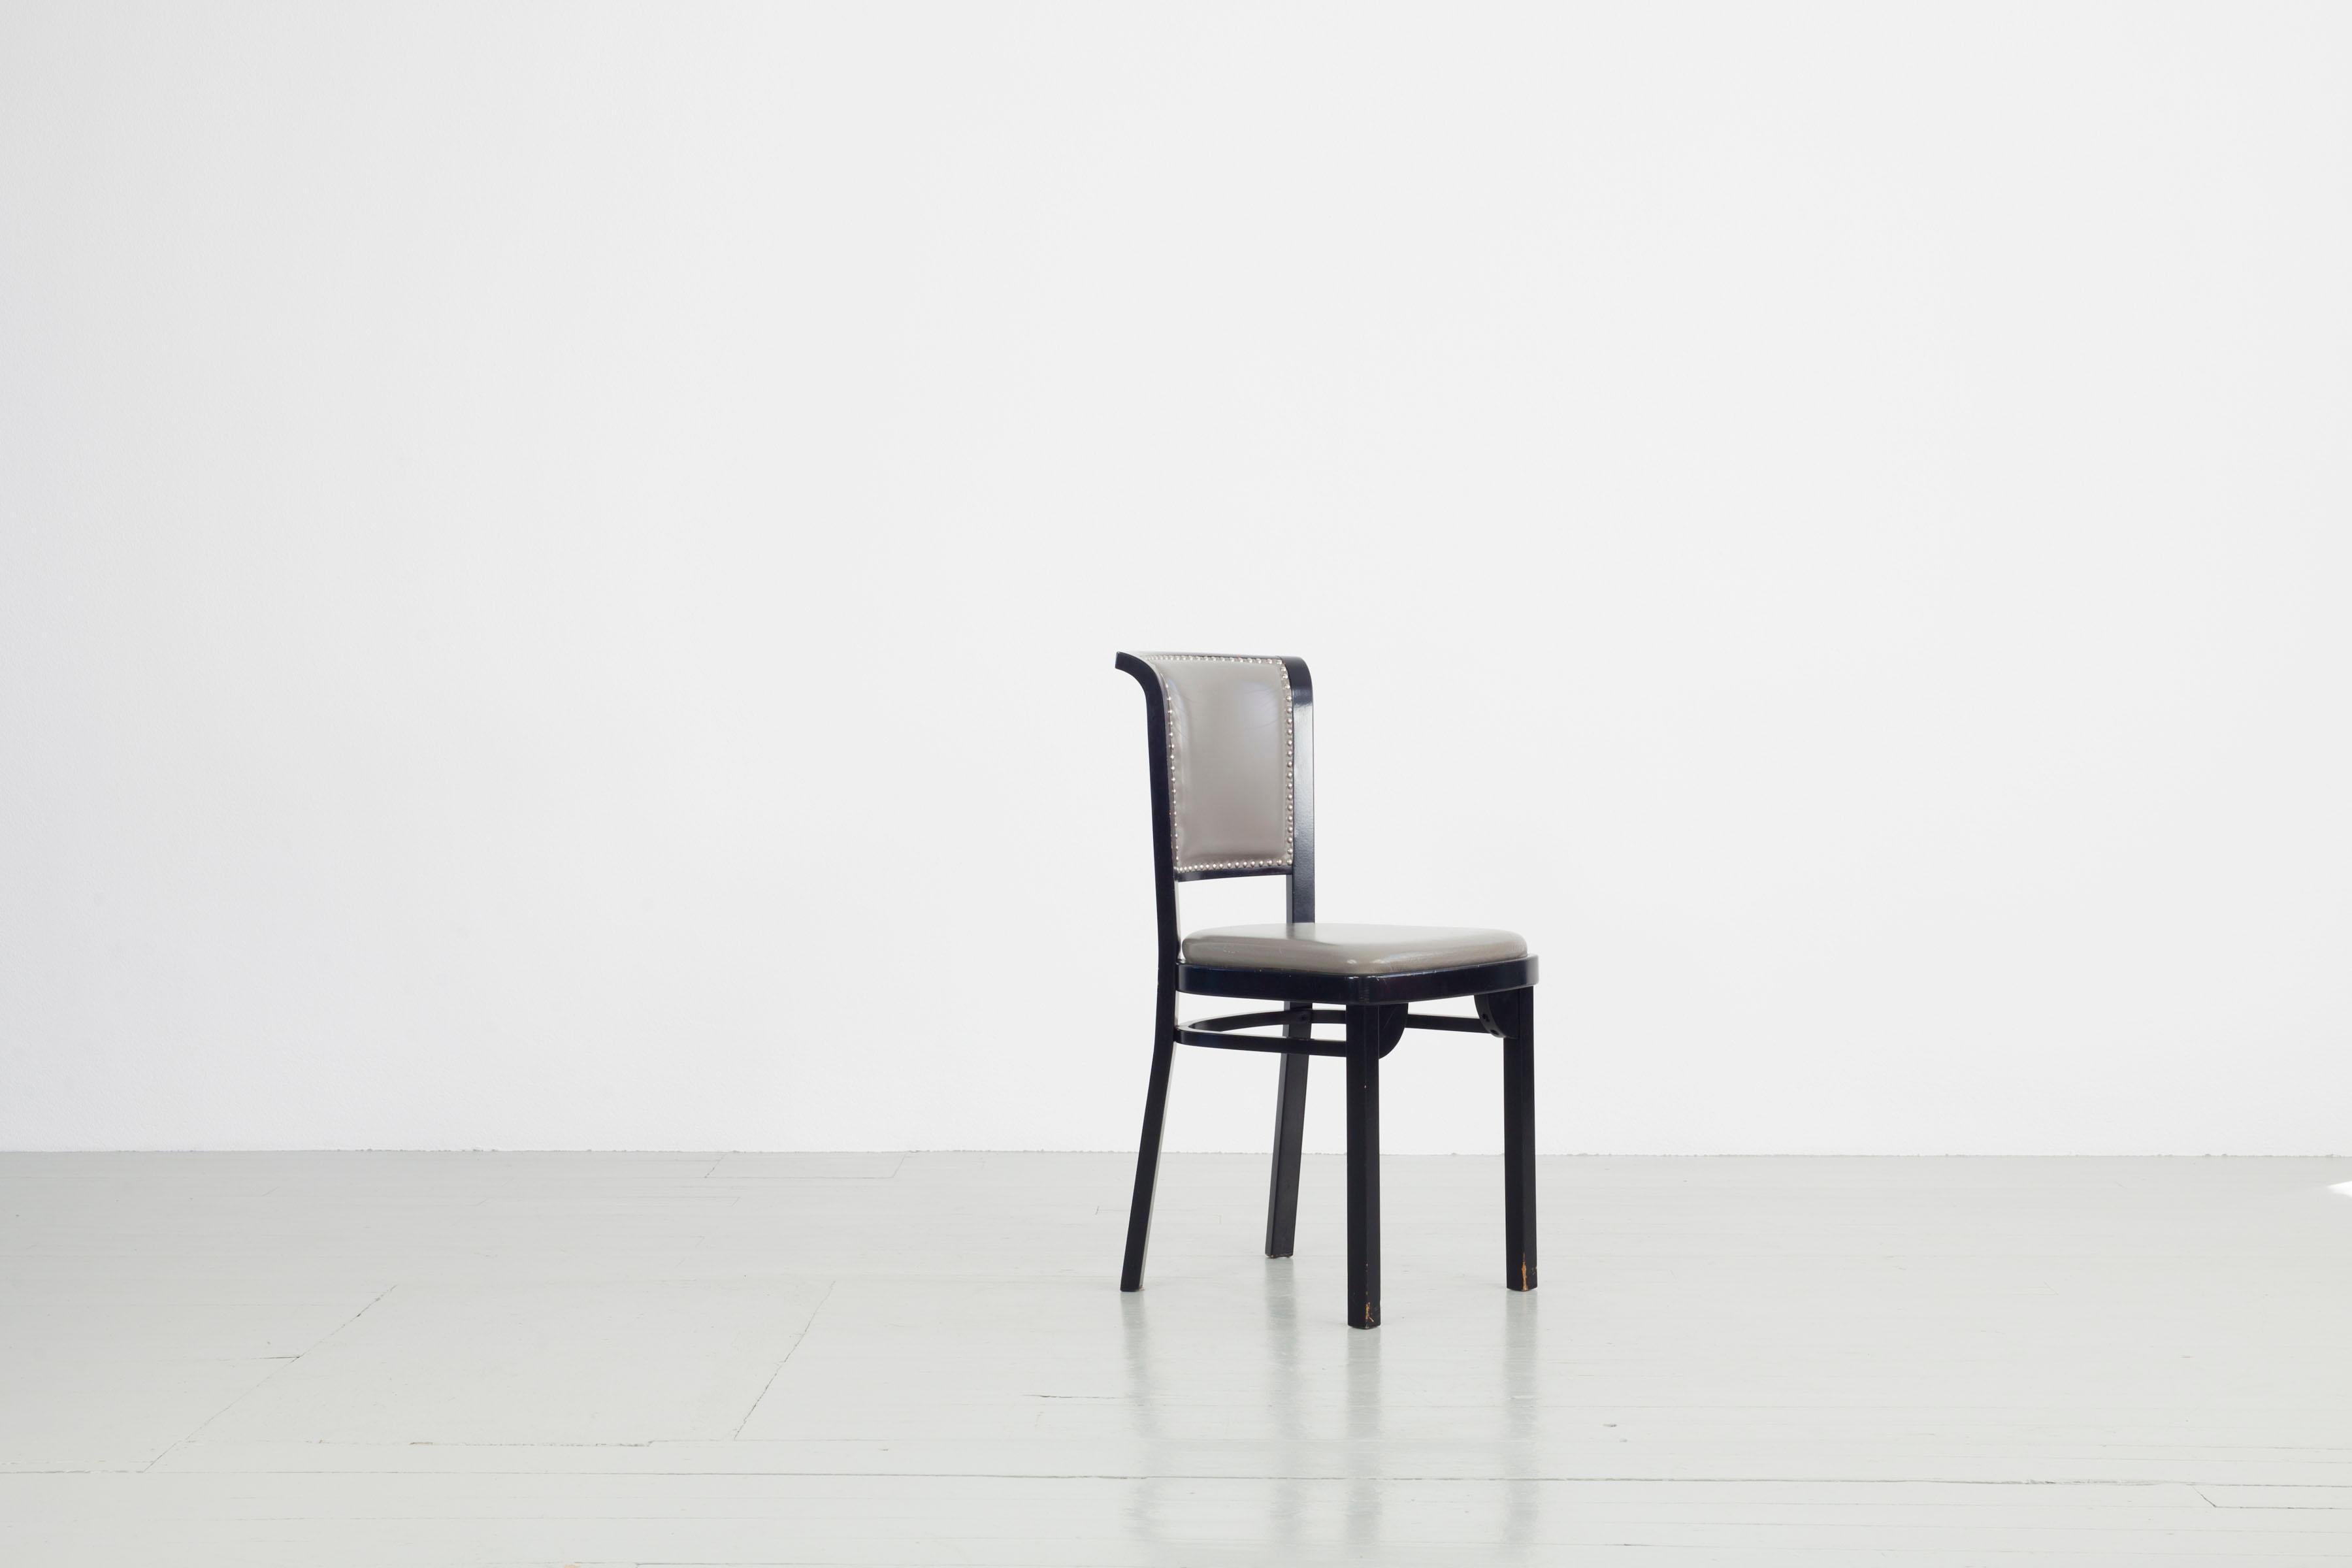 Dieses Set besteht aus fünf Thonet Stühlen. Der Stuhl wurde 1984 von Thonet aus dunkel lackiertem Holz und grauem Sitz und Rückenlehne mit silbernen Polsternägeln hergestellt. Ein neuer Bezug ist notwendig, ansonsten sind die Stühle in gutem